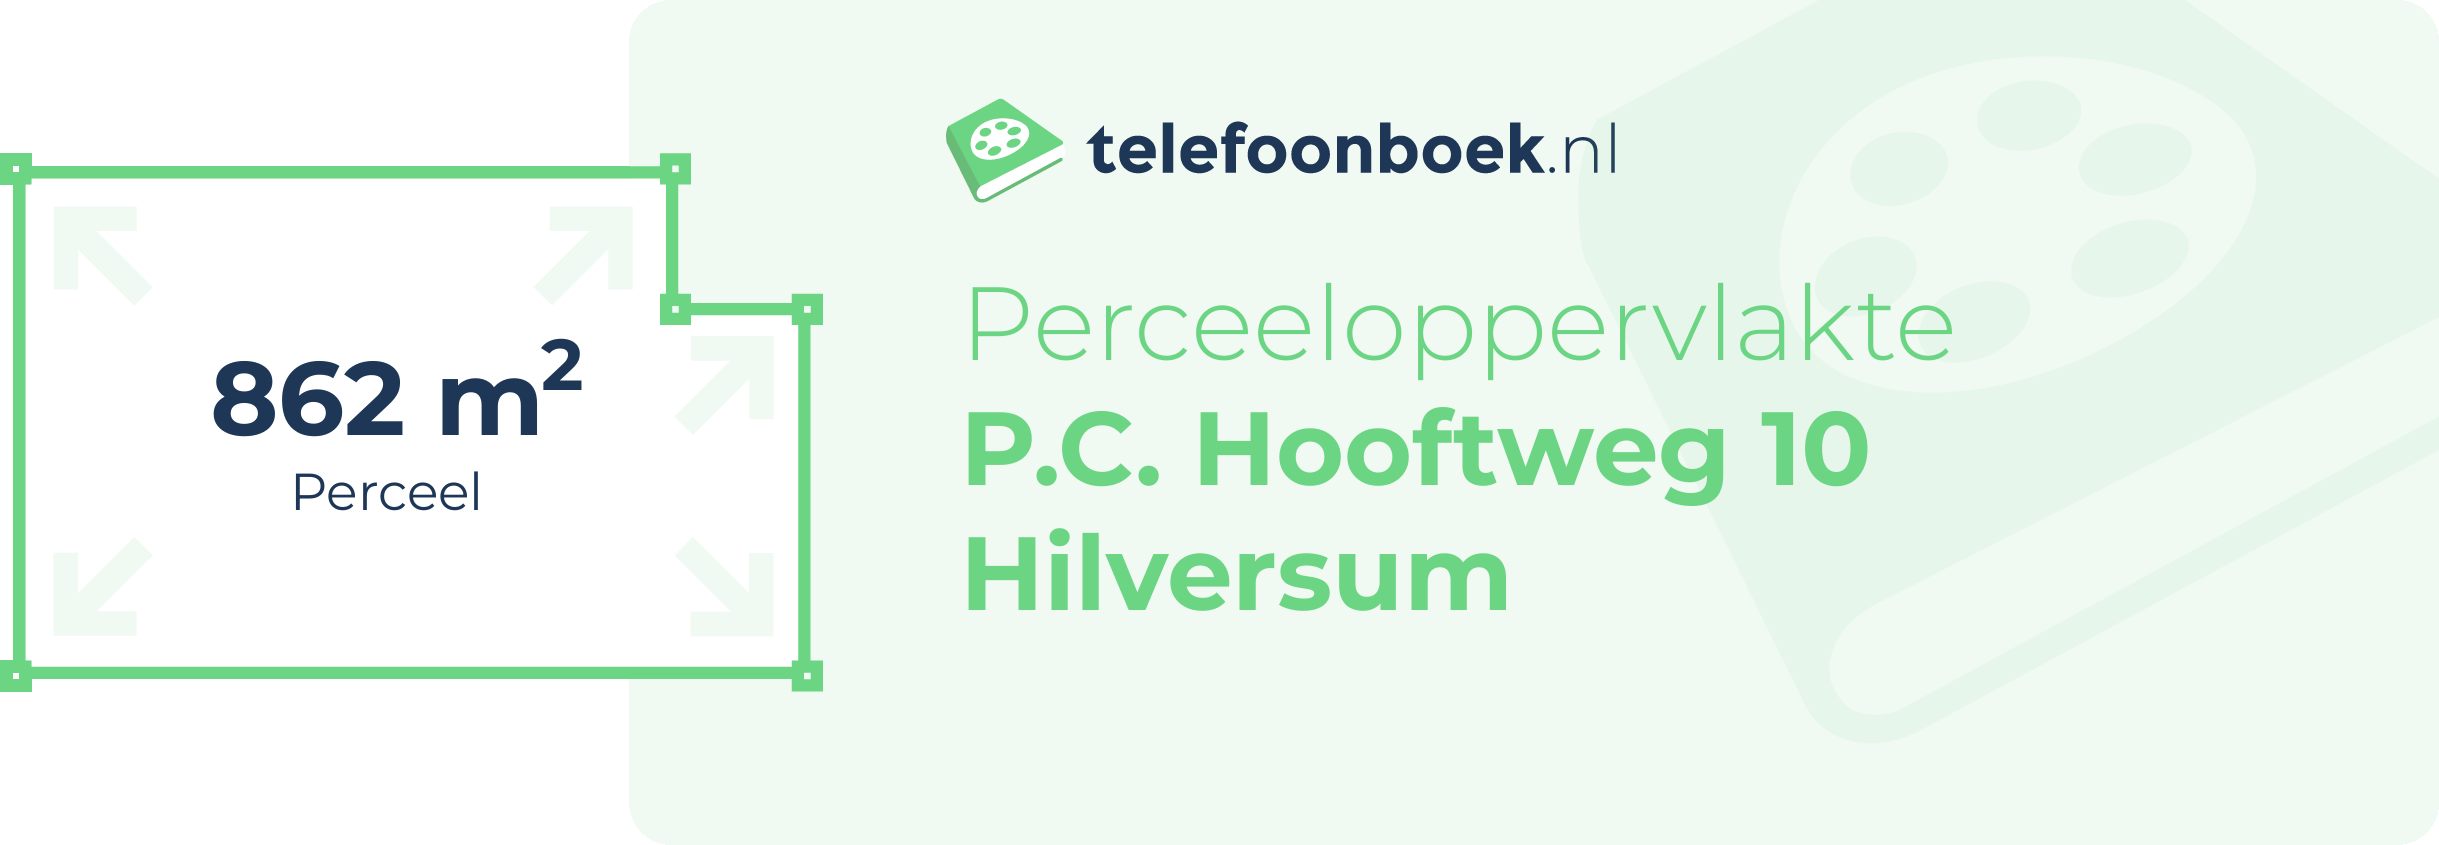 Perceeloppervlakte P.C. Hooftweg 10 Hilversum